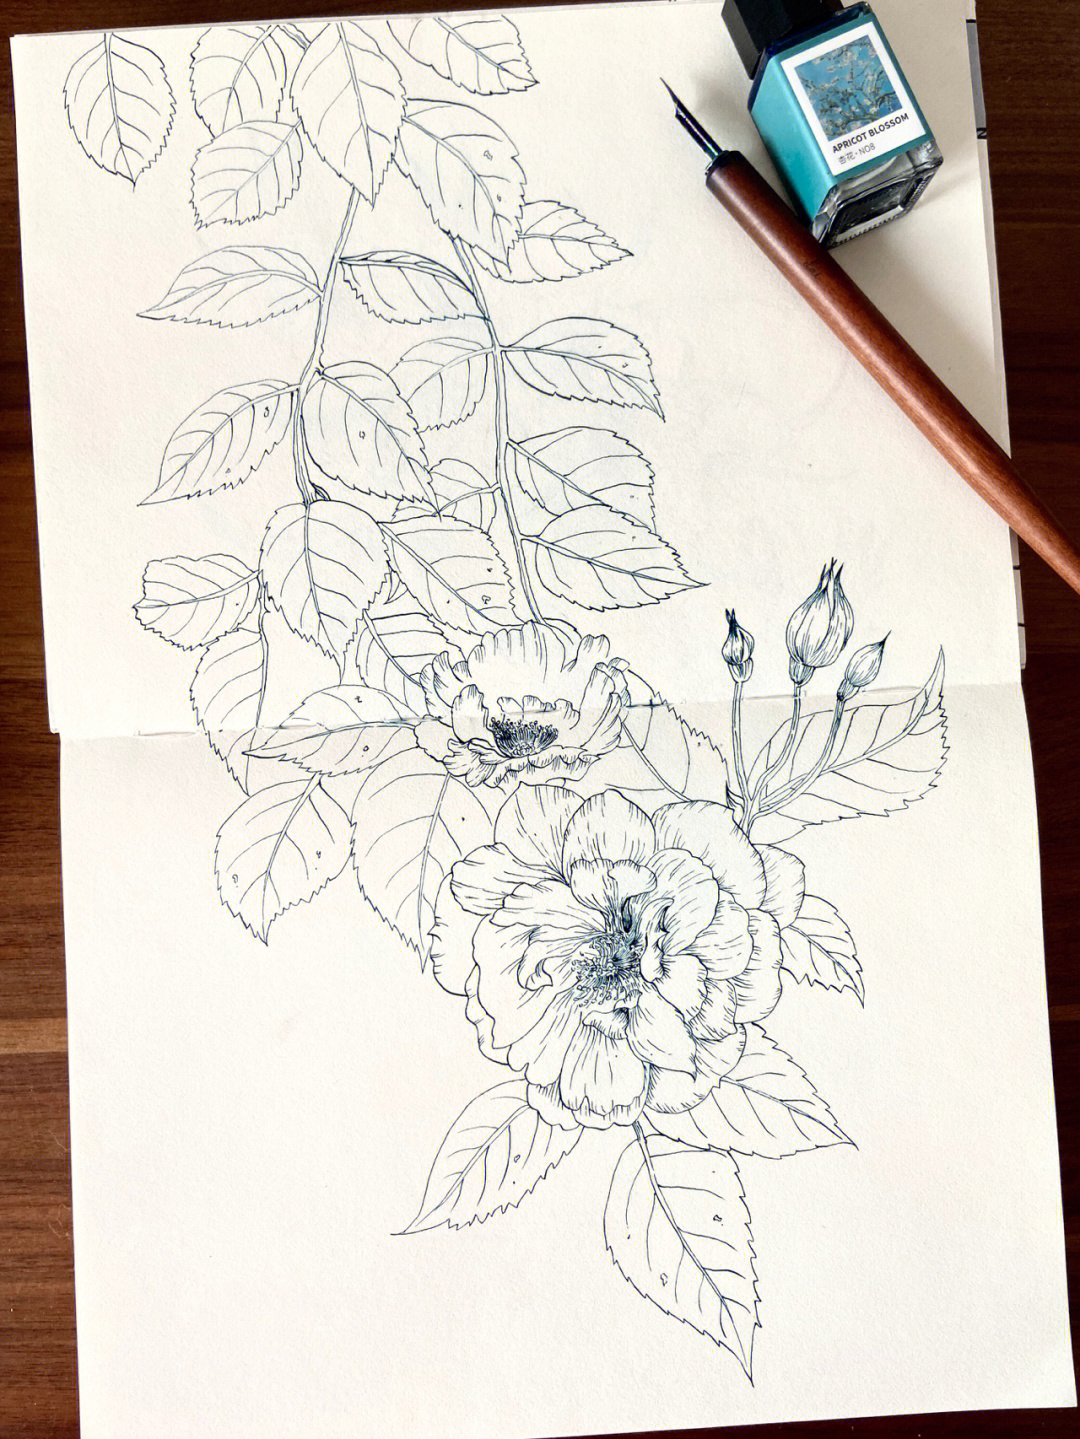 蔷薇花怎么画画法图片